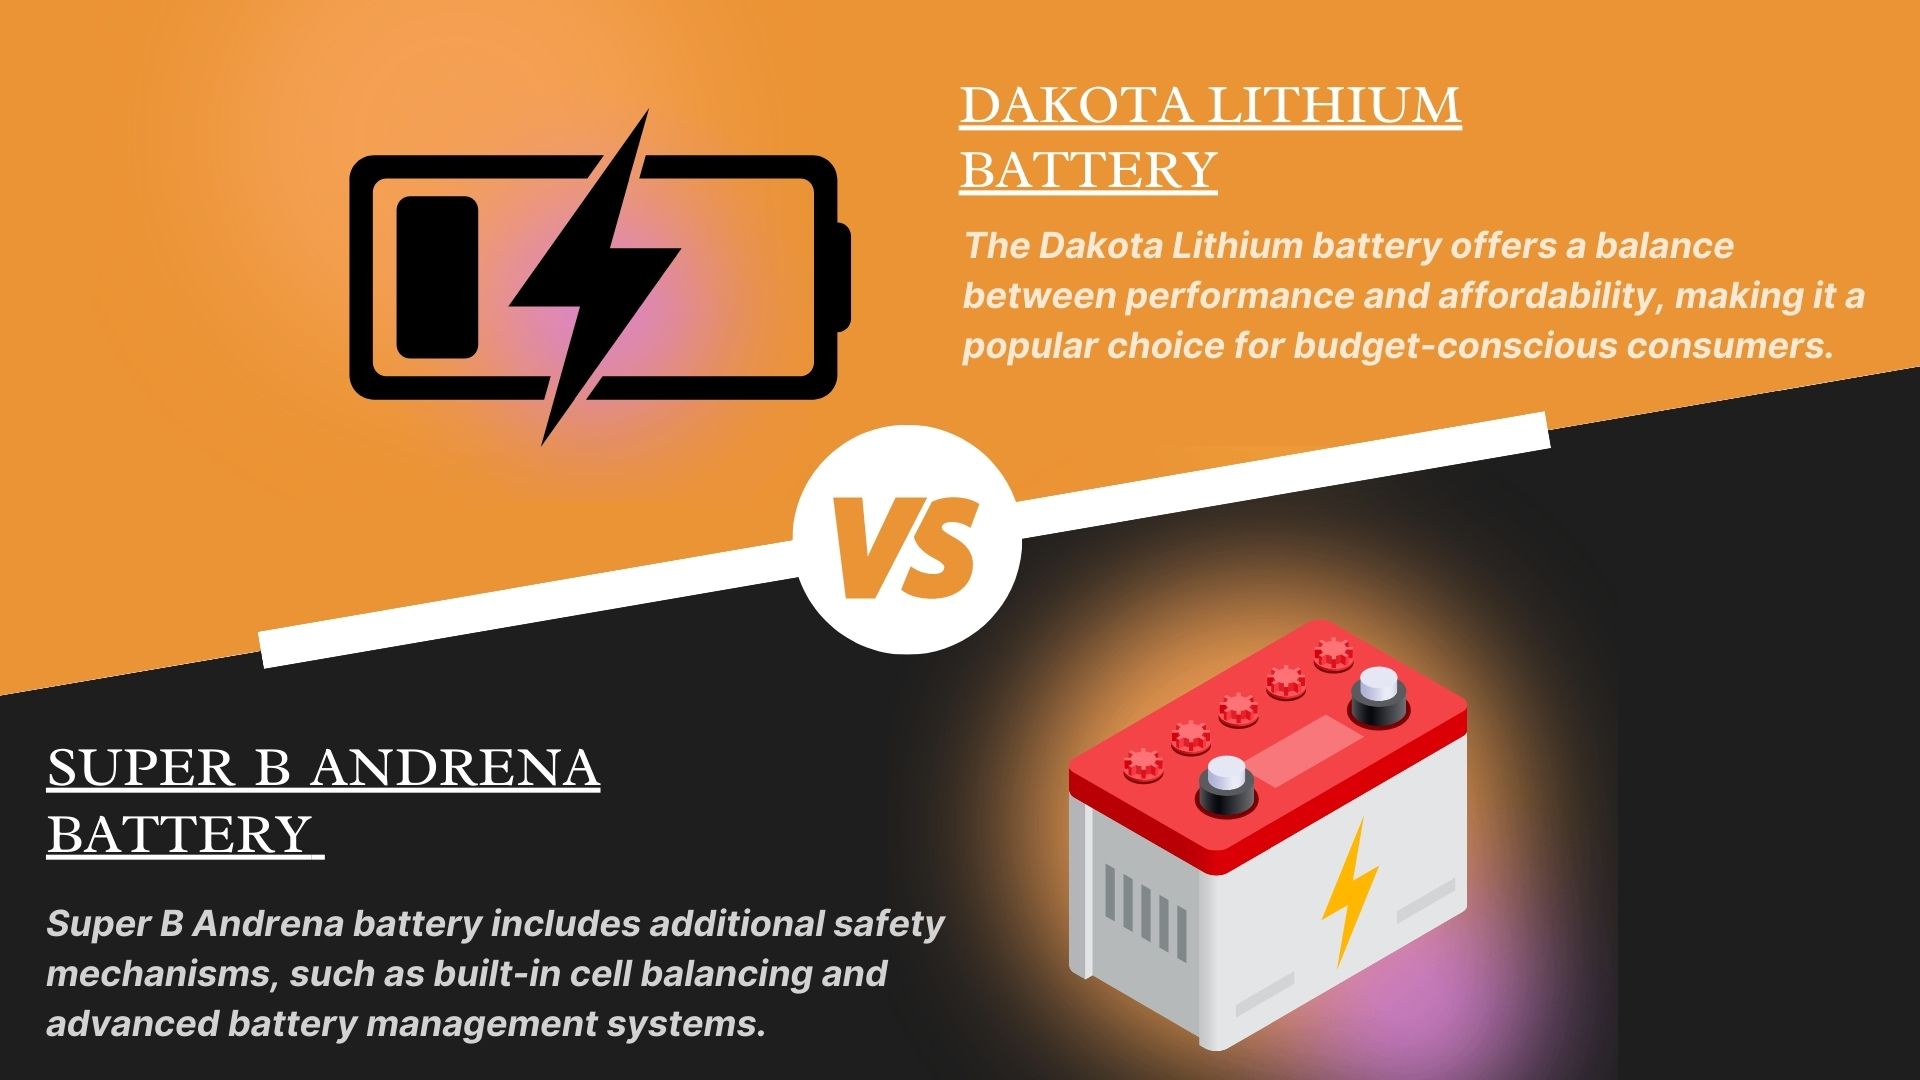 Super B Andrena vs Dakota Lithium